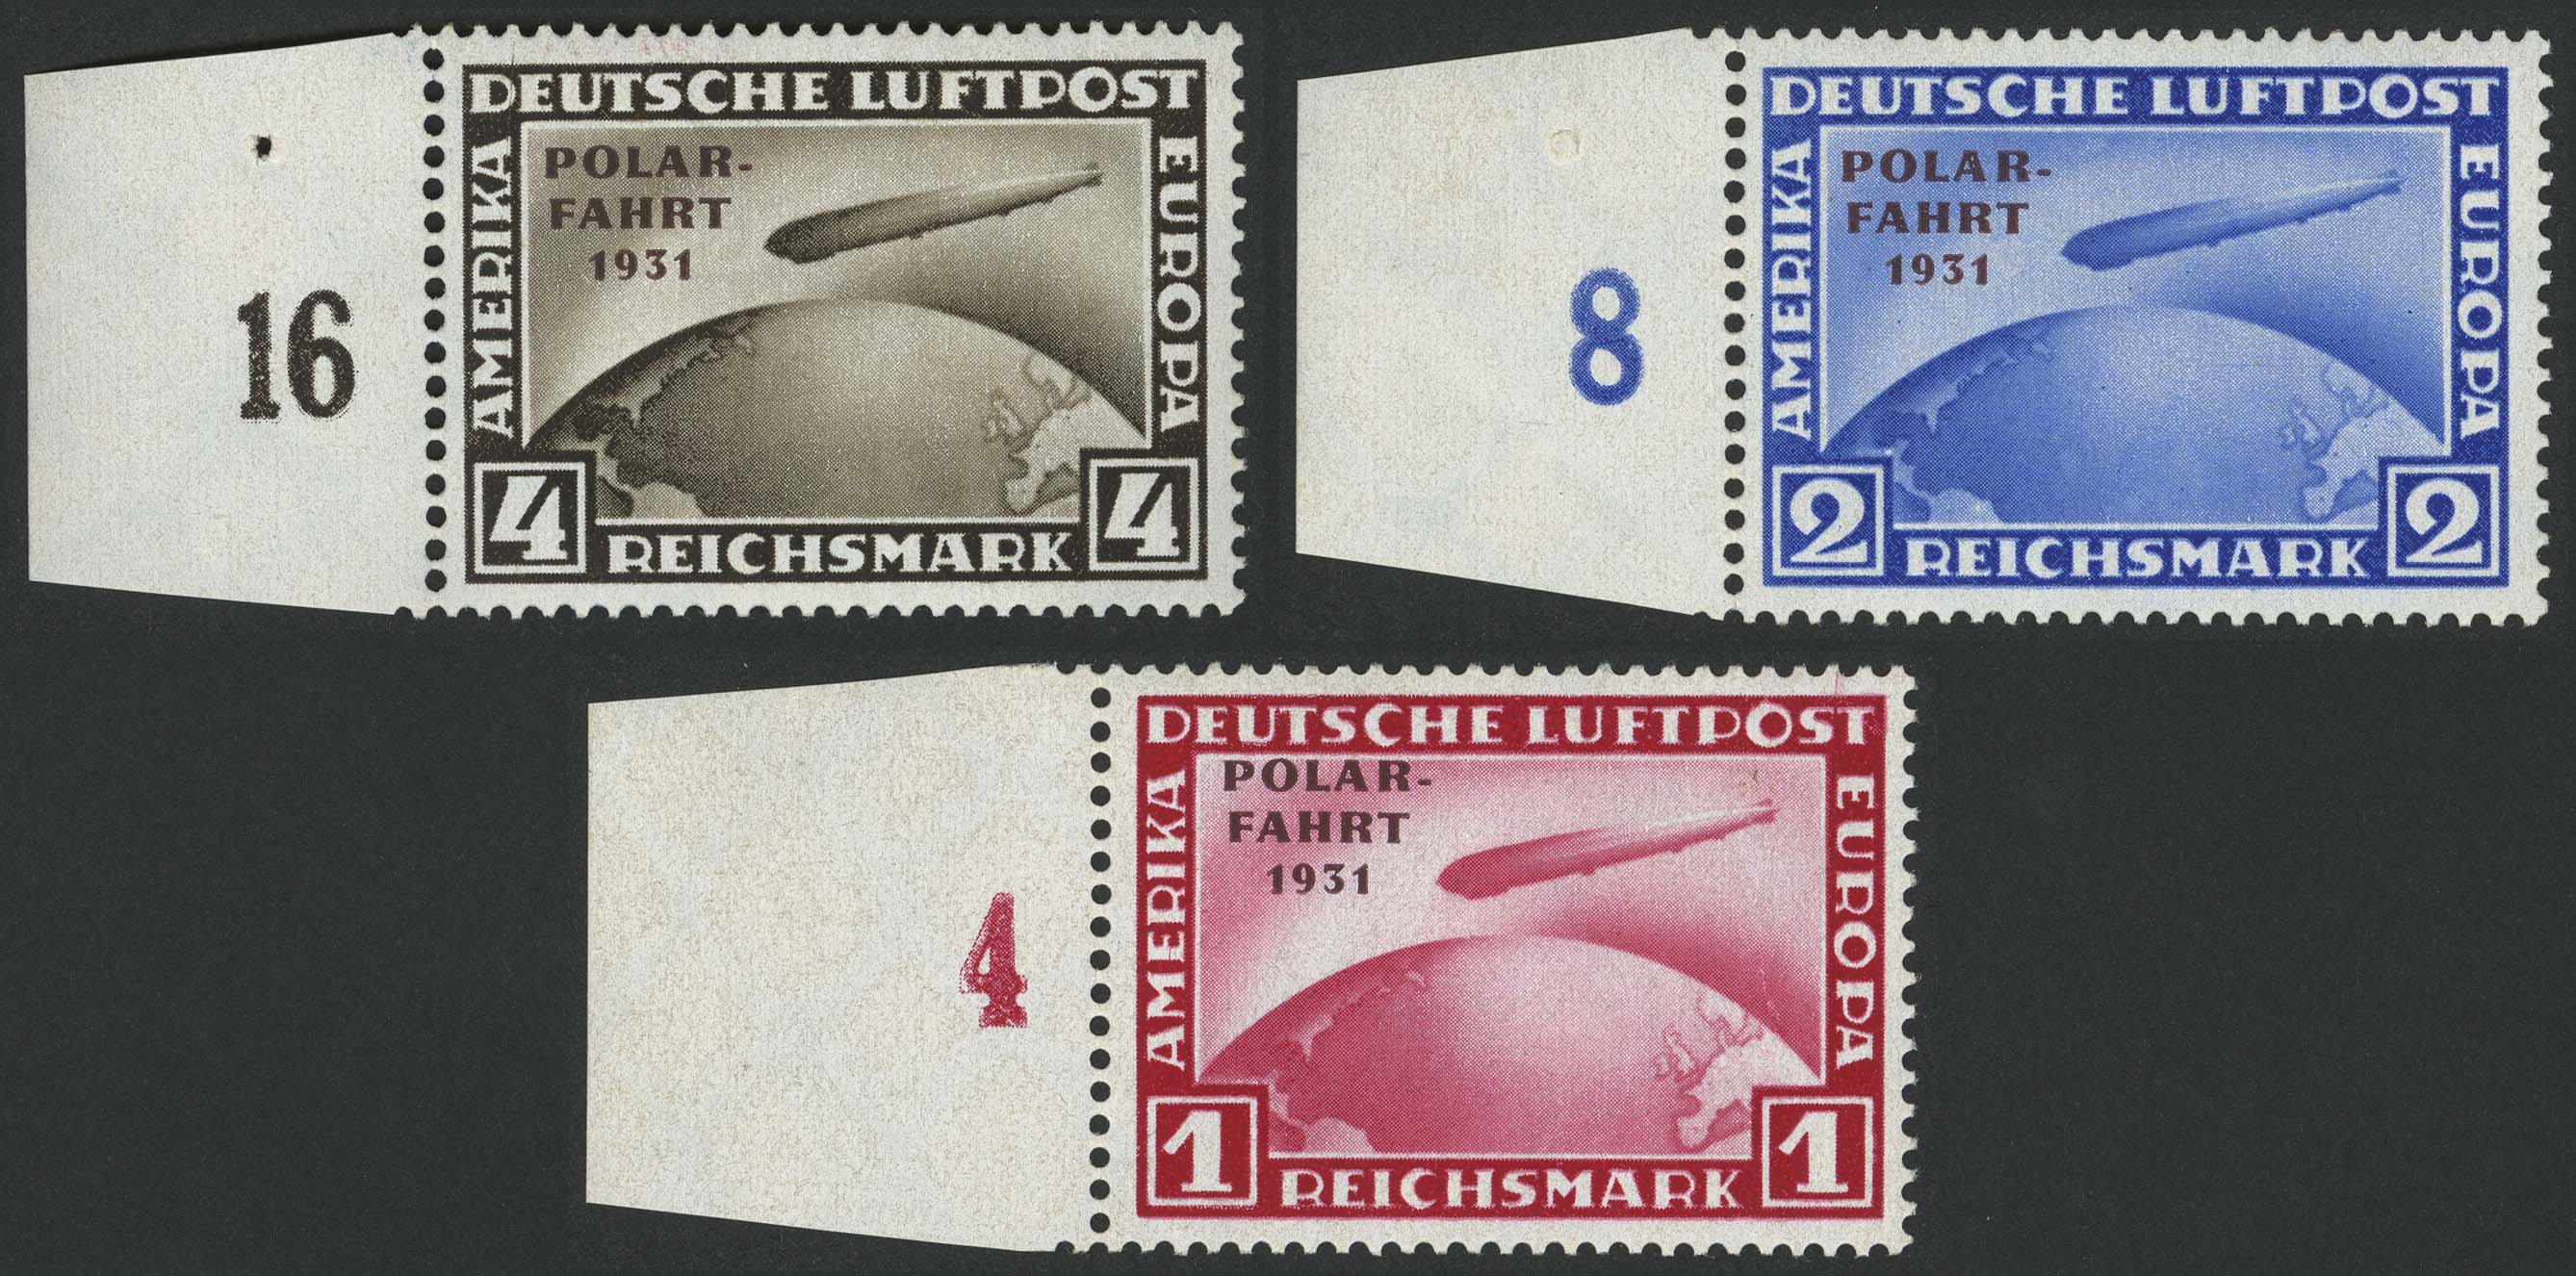 Lot 5778 - Deutsches Reich weimarer republik -  Auktionshaus Ulrich Felzmann GmbH & Co. KG 